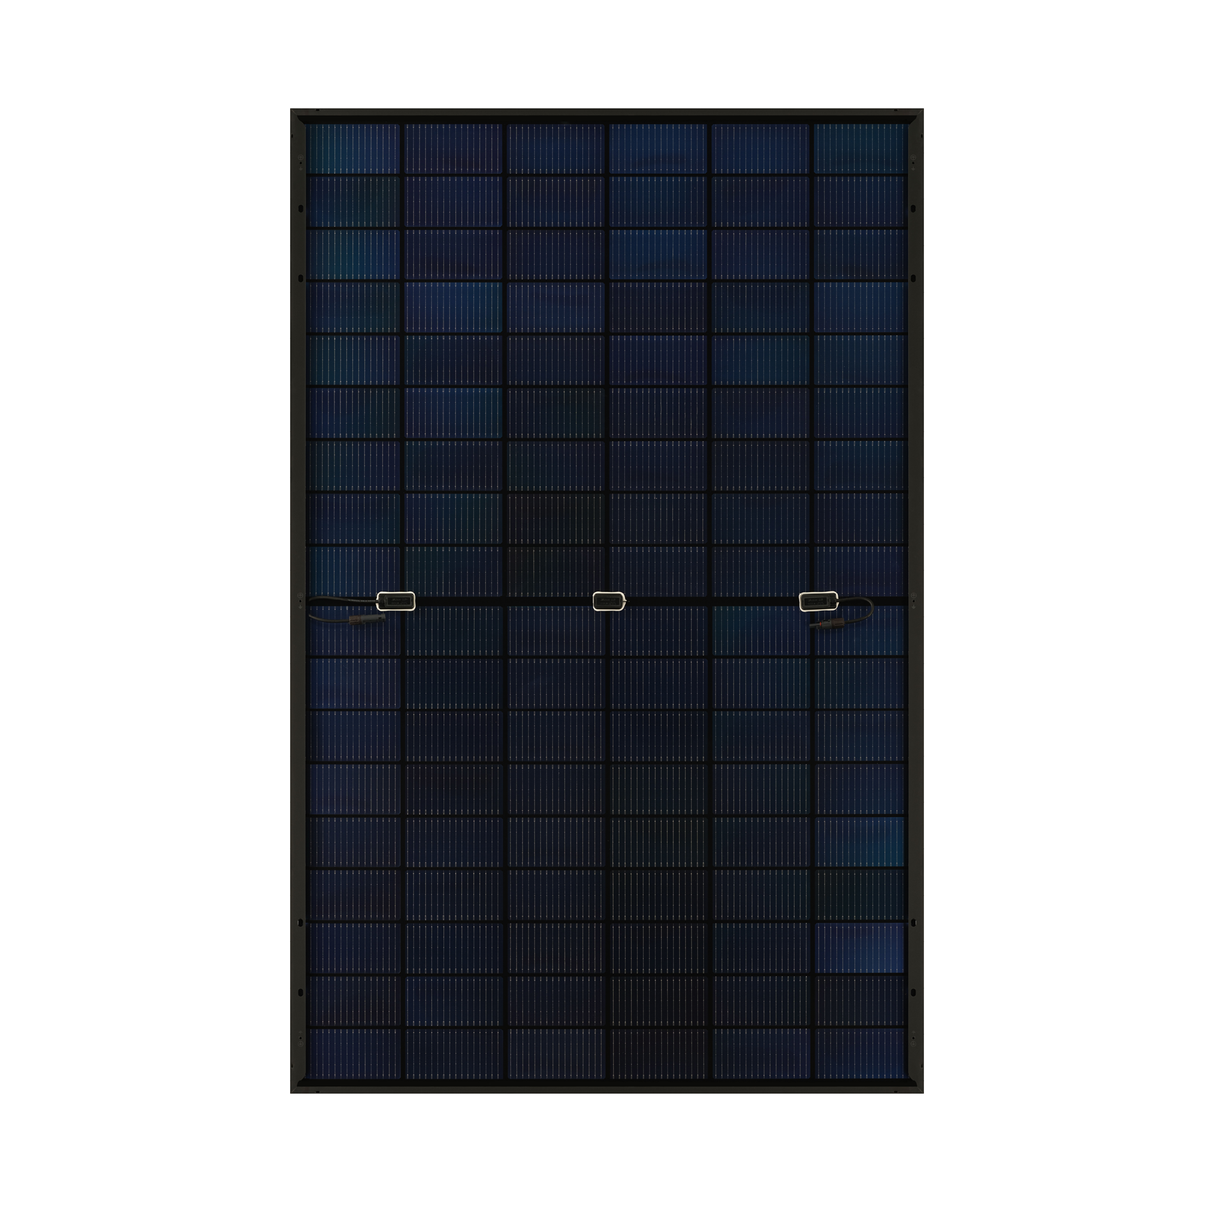 36x JA Solar Solarmodul JAM54D41 430W Glas-Glas Bifazial